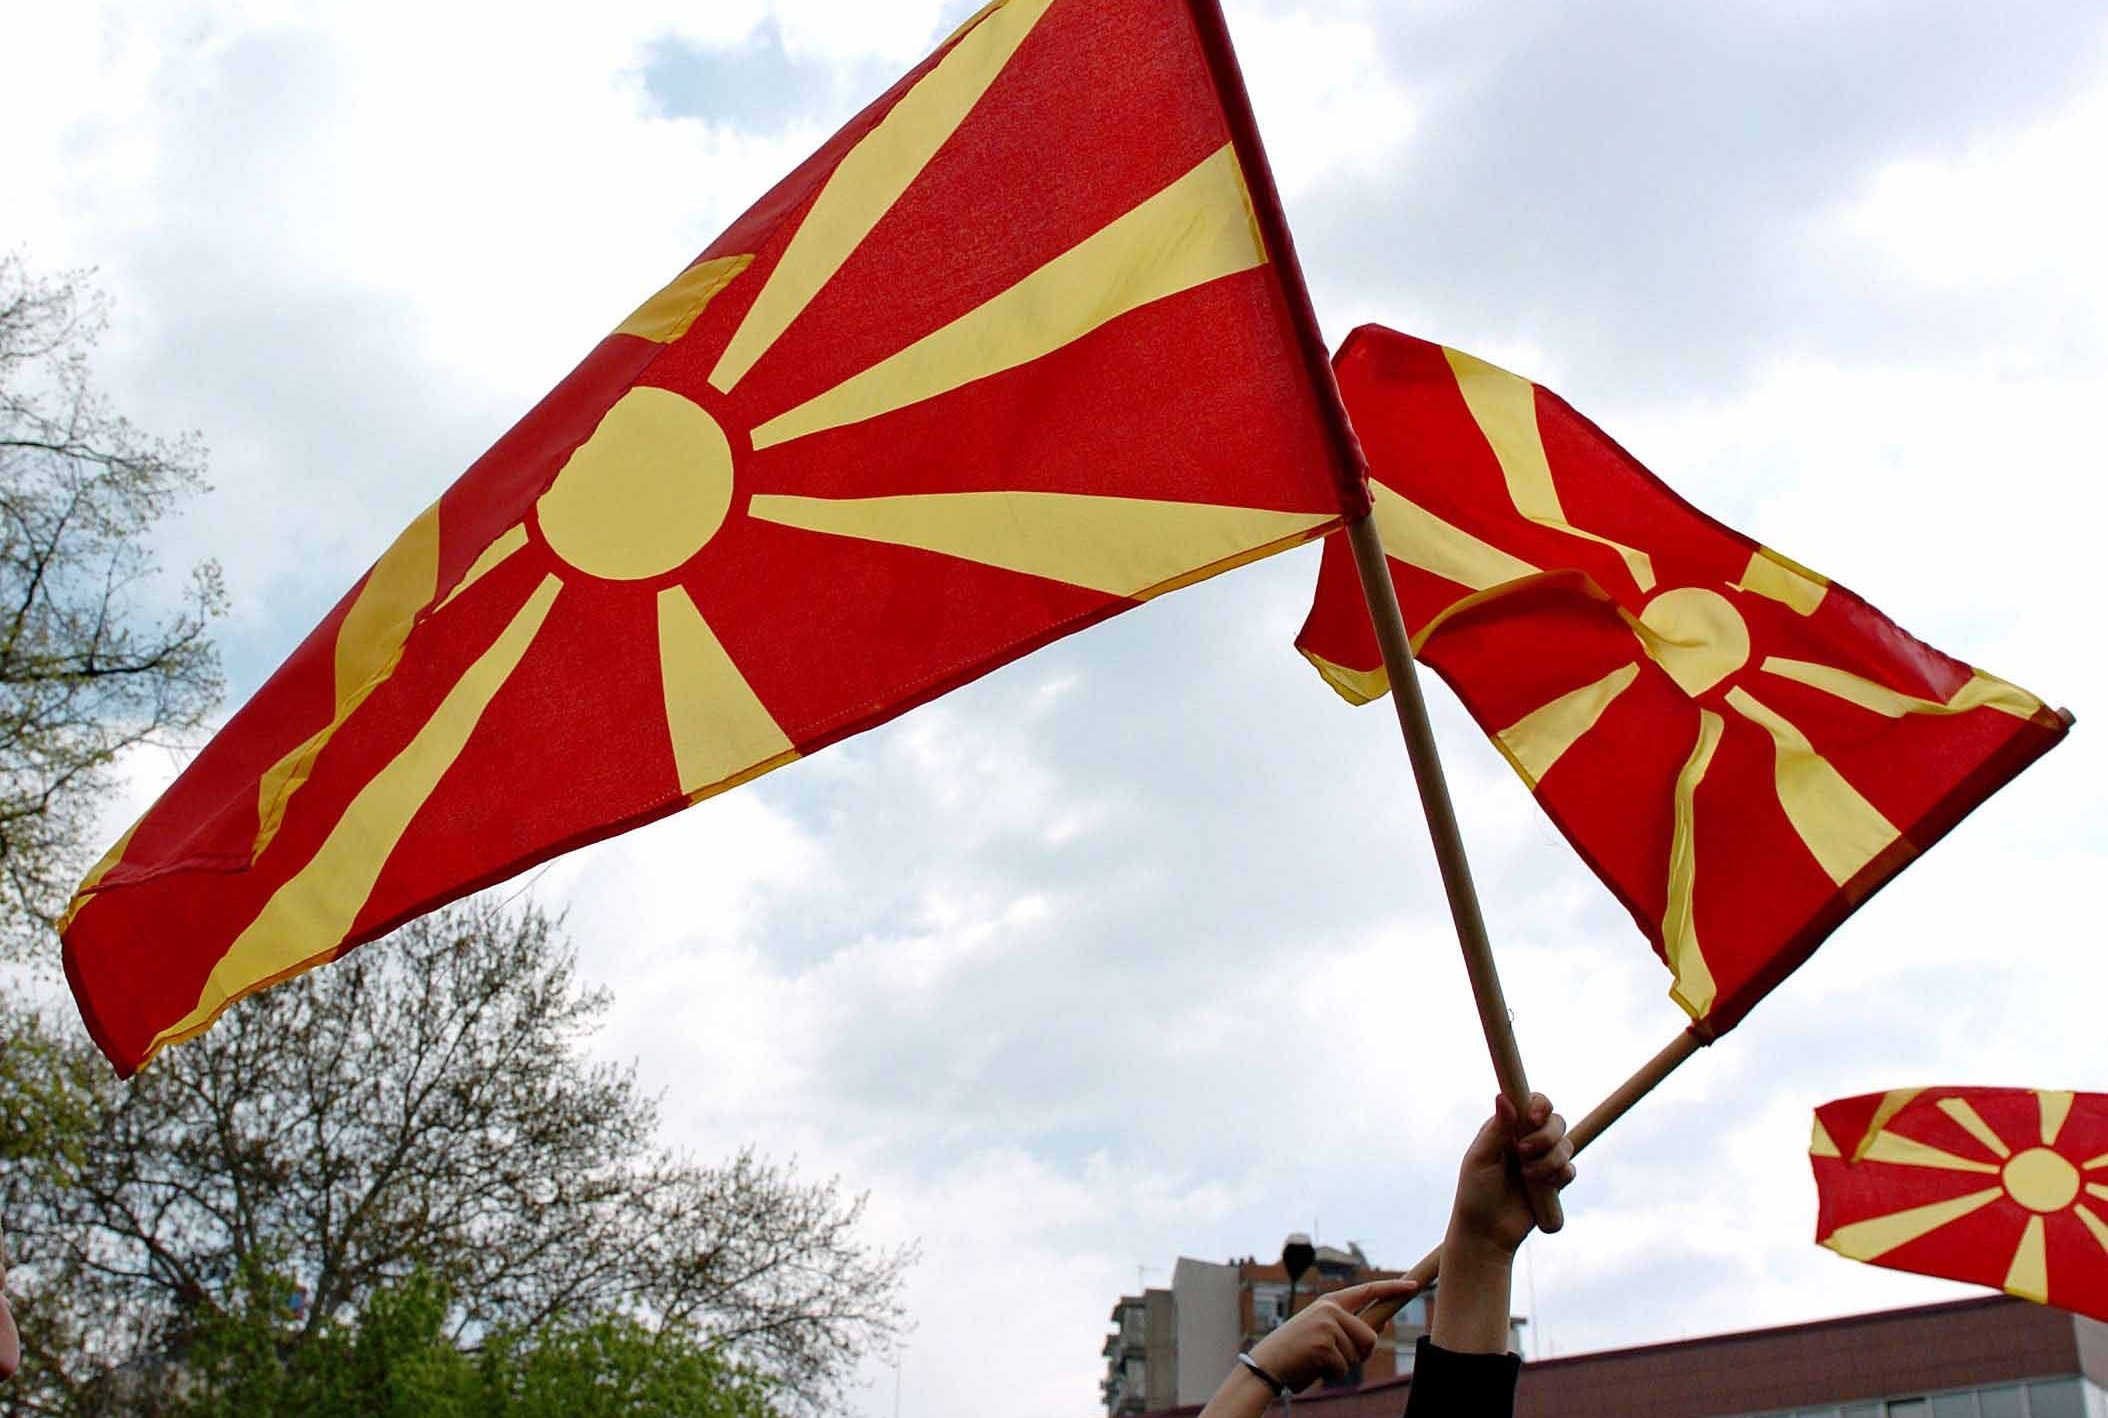 “Δεν είναι δουλειά των ΗΠΑ” να βοηθήσουν τα Σκόπια στο θέμα της ονομασίας